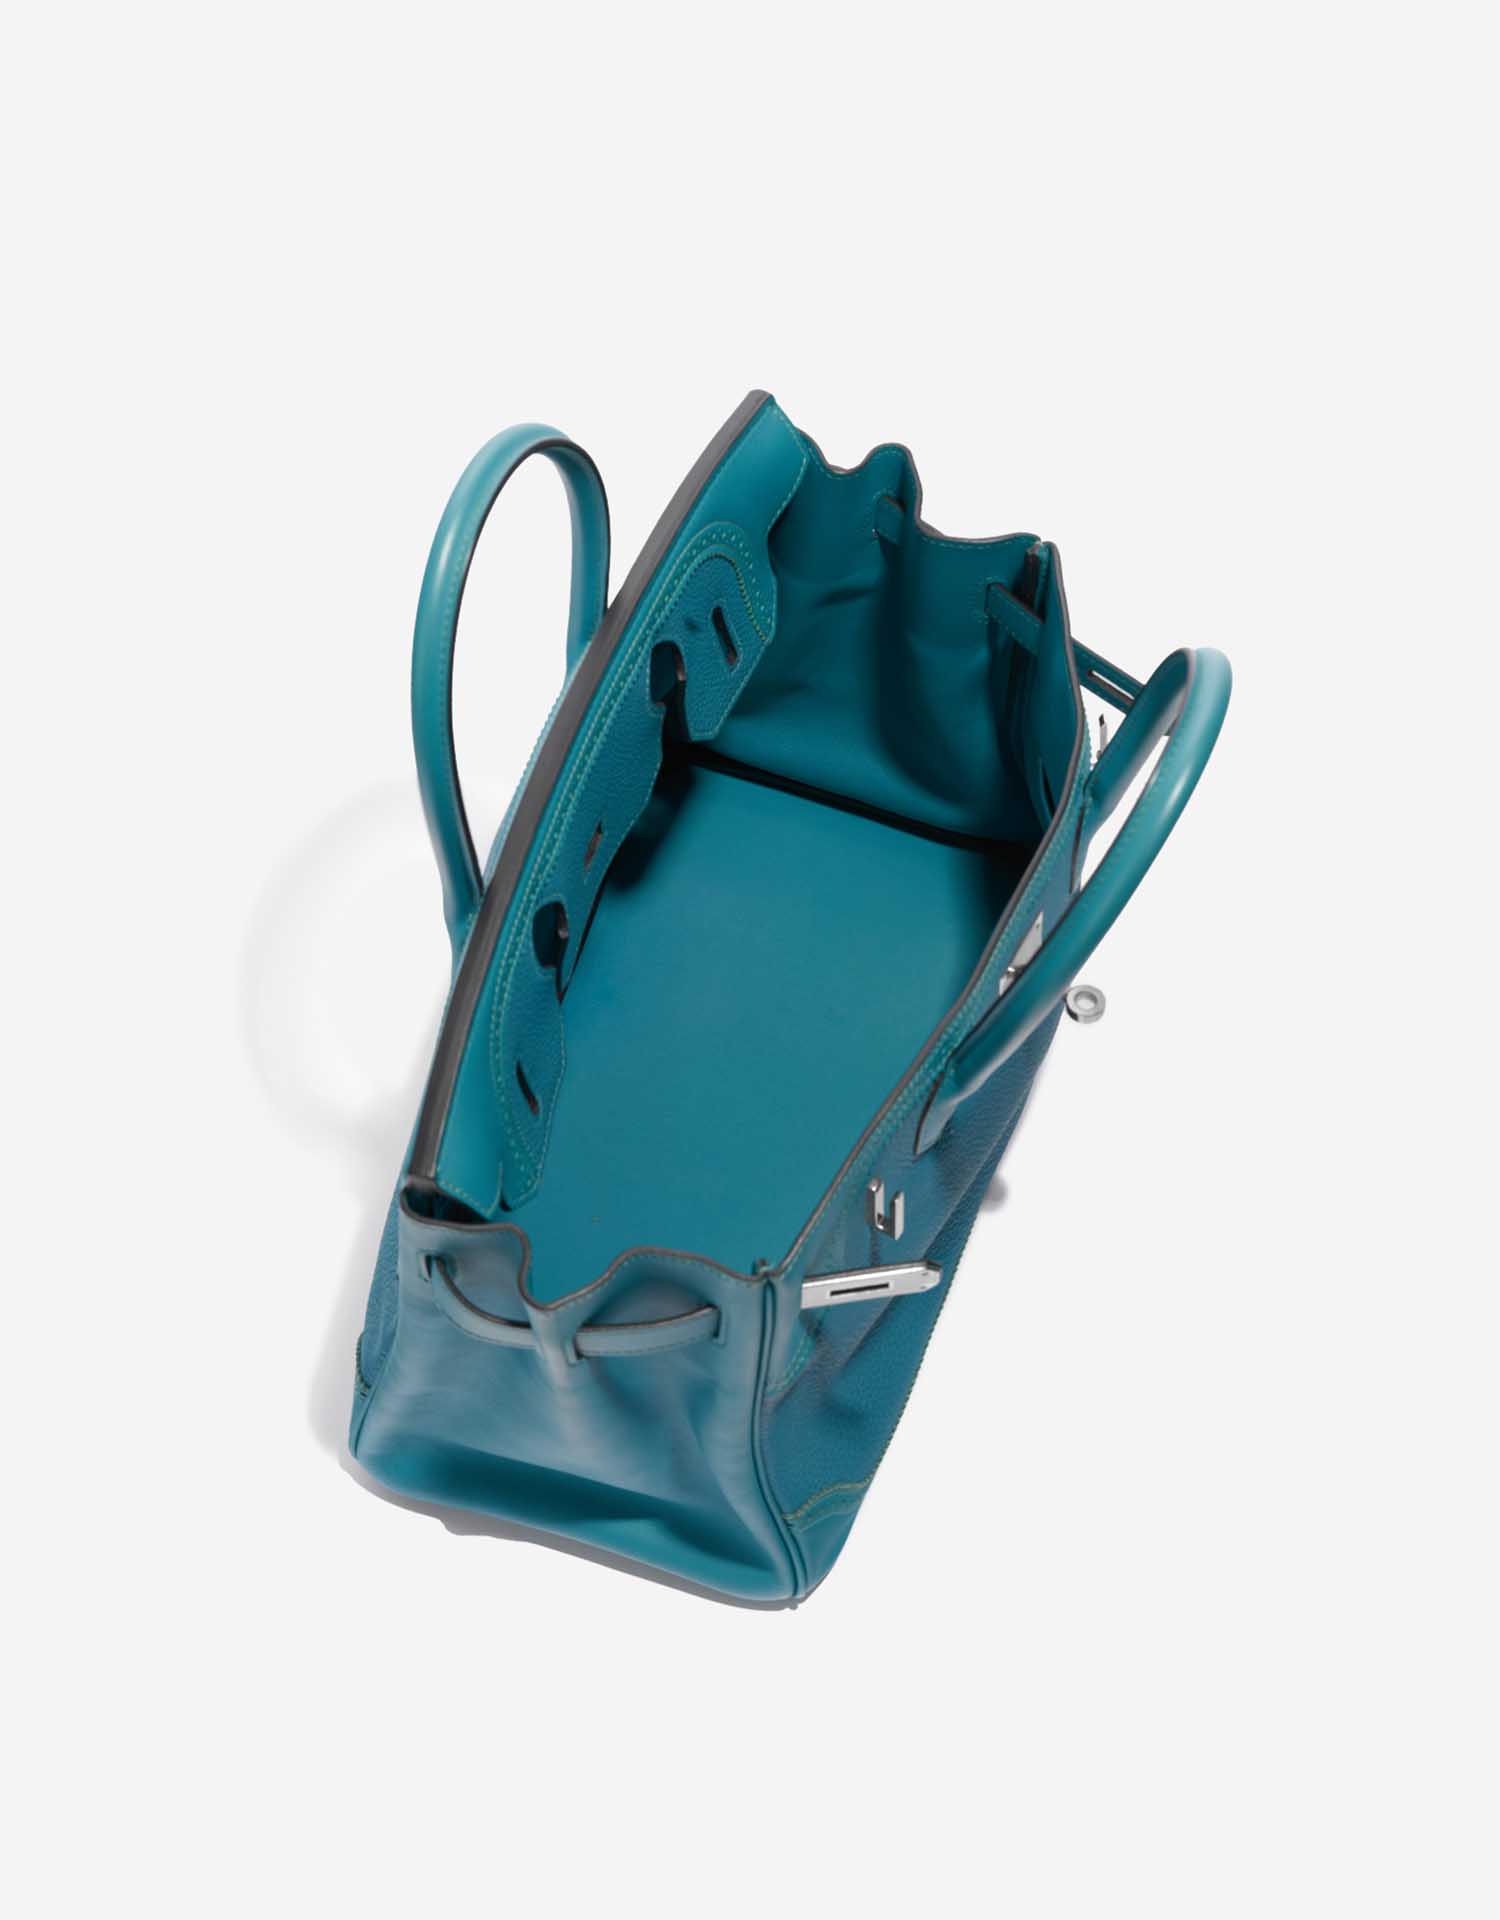 Hermès Birkin 30 Turquoise Inside | Vendez votre sac de créateur sur Saclab.com